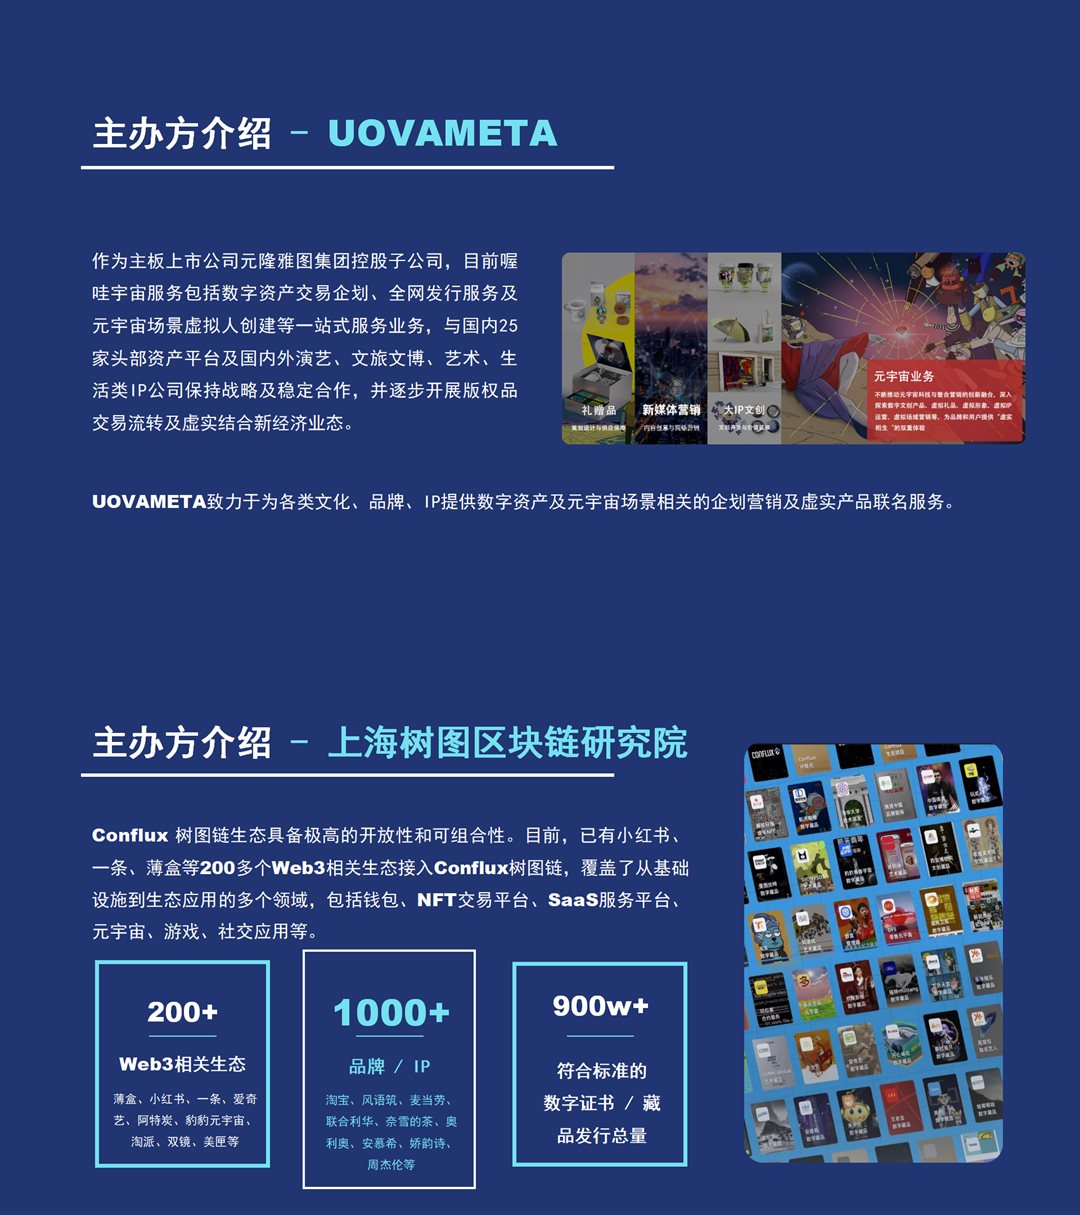 中国Web3解决方案 - 活动行海报等_01(5).png